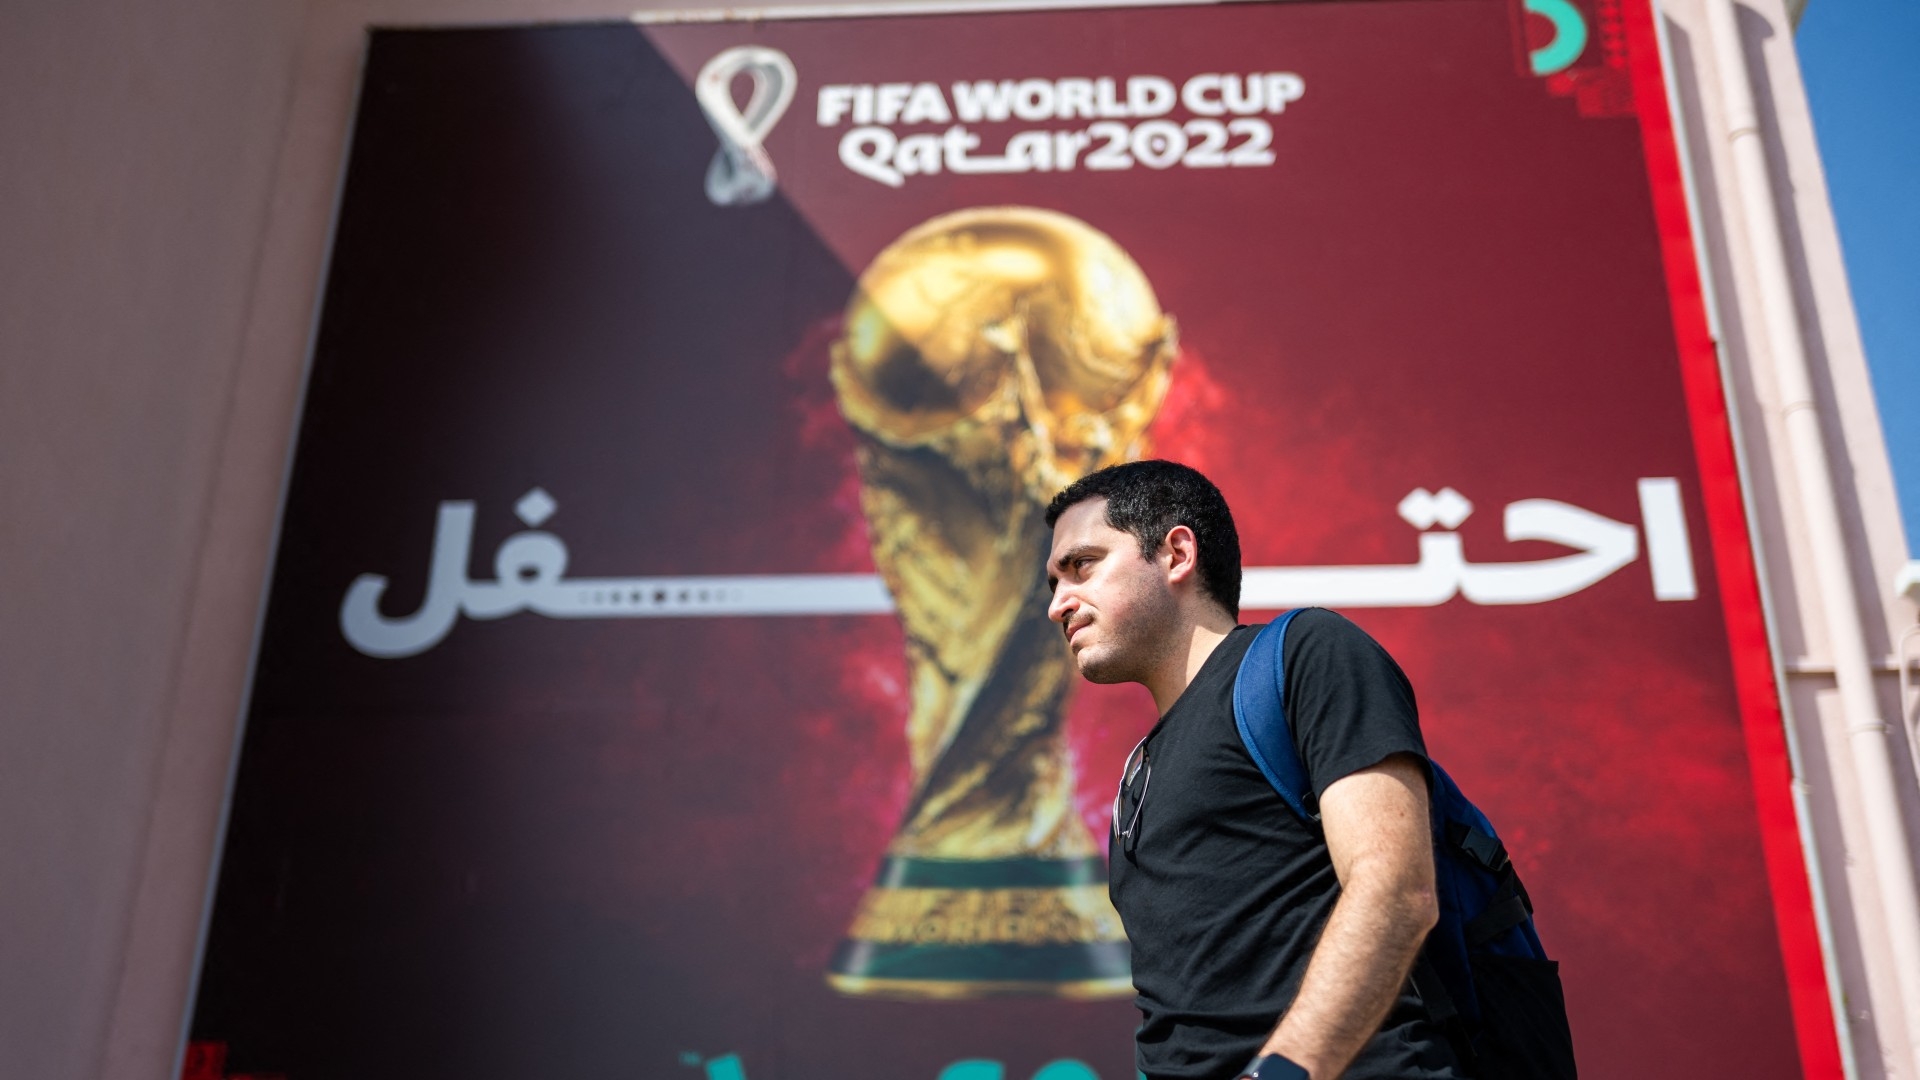  Un homme passe devant une bannière de la Coupe du monde de la FIFA à Doha le 3 novembre 2022 (AFP)